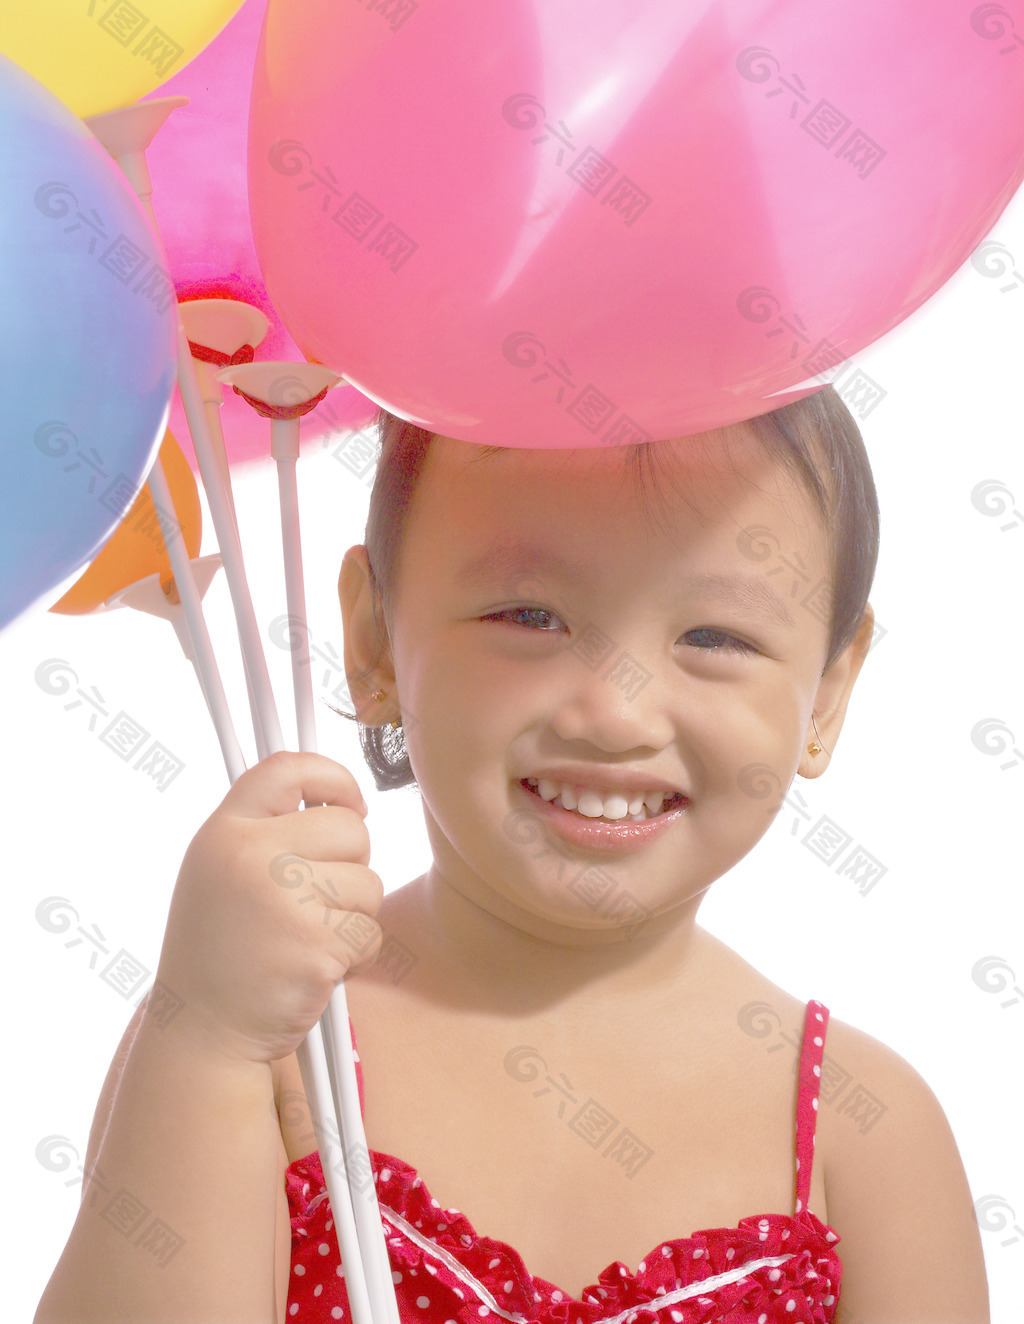 拿气球的孩子图片大全-拿气球的孩子高清图片下载-觅知网